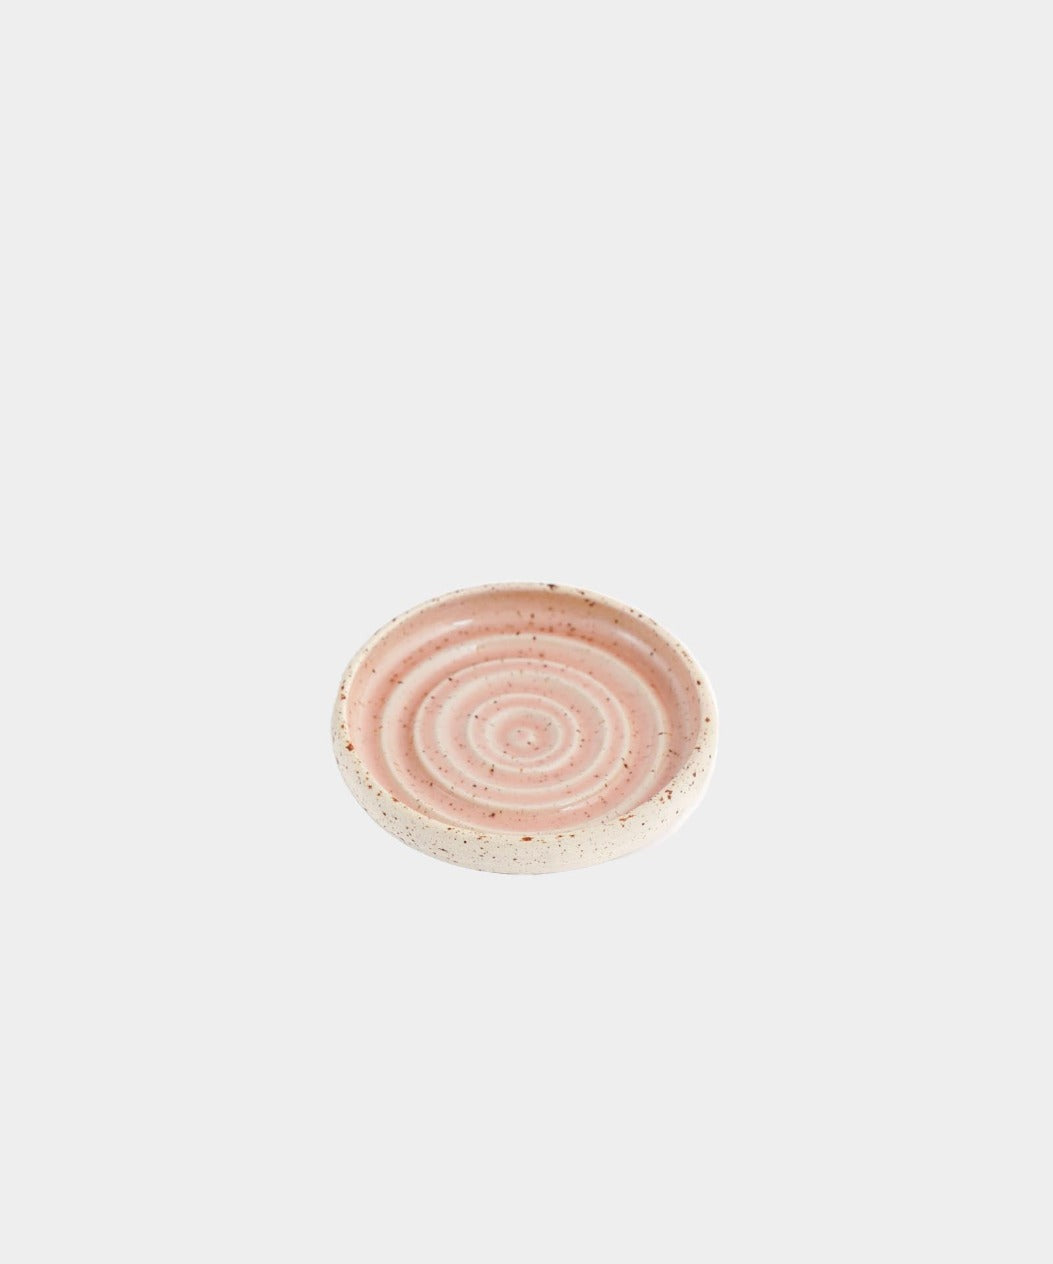 Håndlavet Keramik Sæbeskål | FLORAL by Vang | Kerama 2